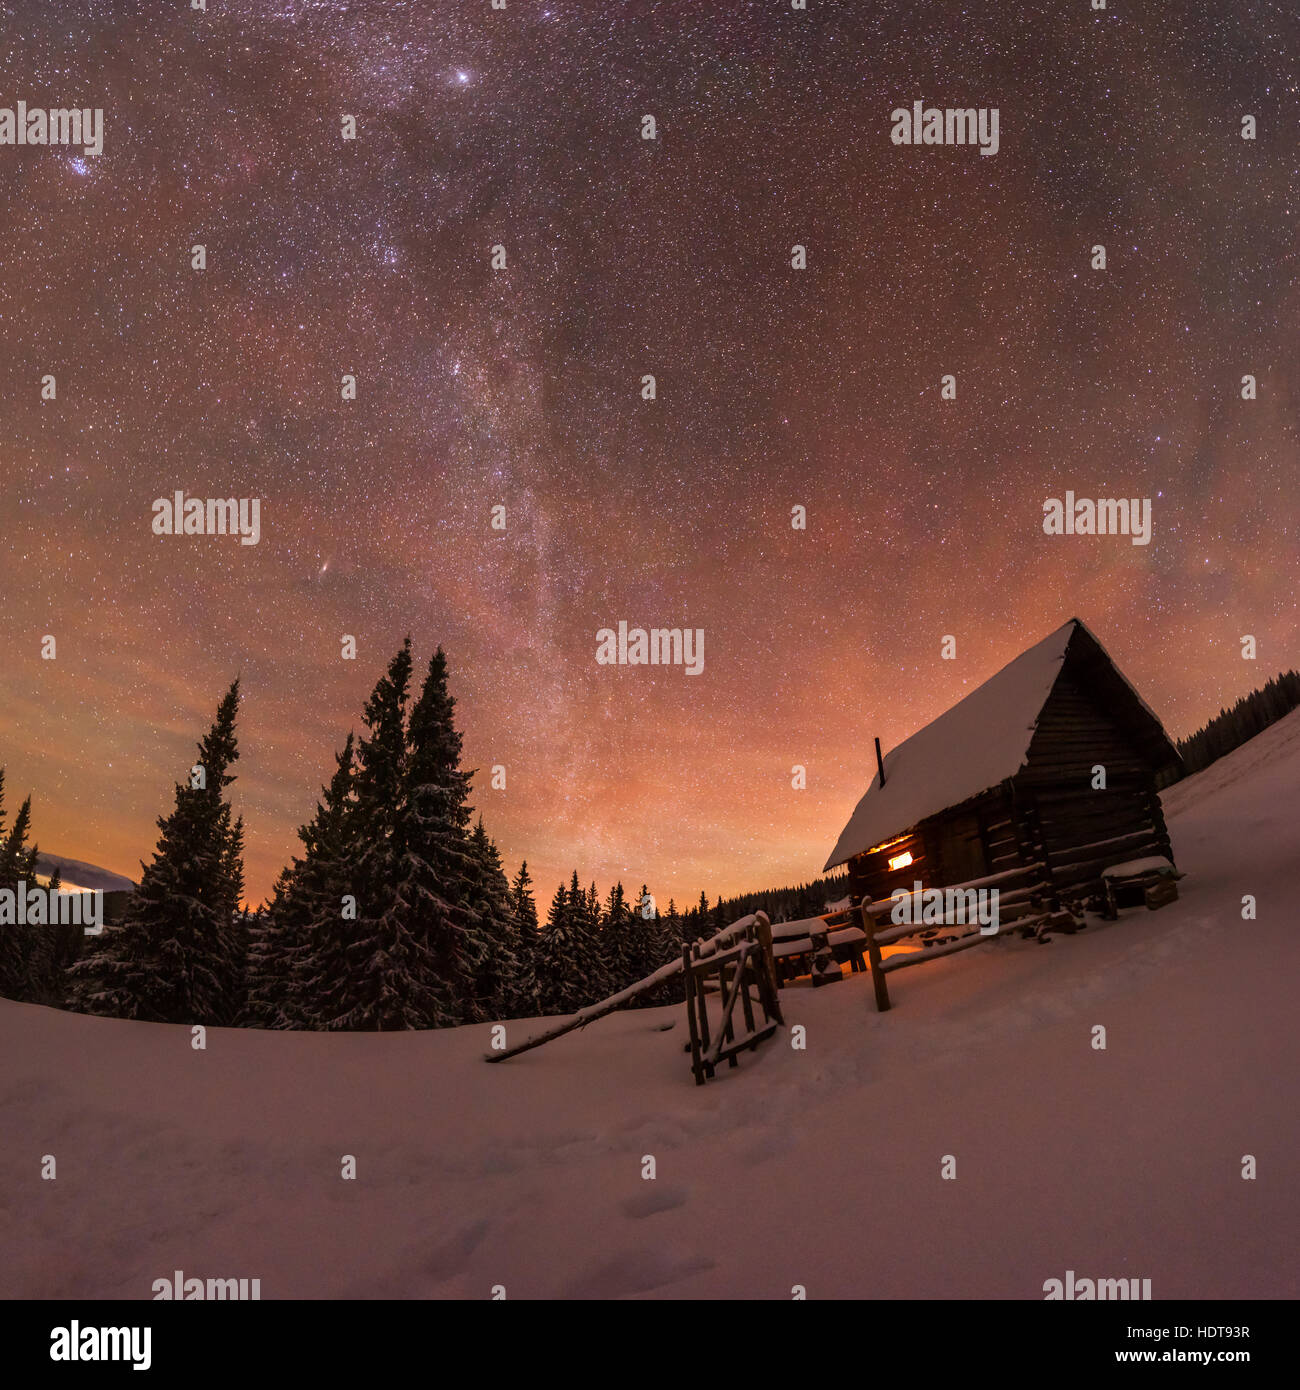 Nuit paysage fantastique glowing par voie lactée. Scène hivernale spectaculaire avec snowy chambre. Carpates, l'Ukraine, l'Europe. Banque D'Images